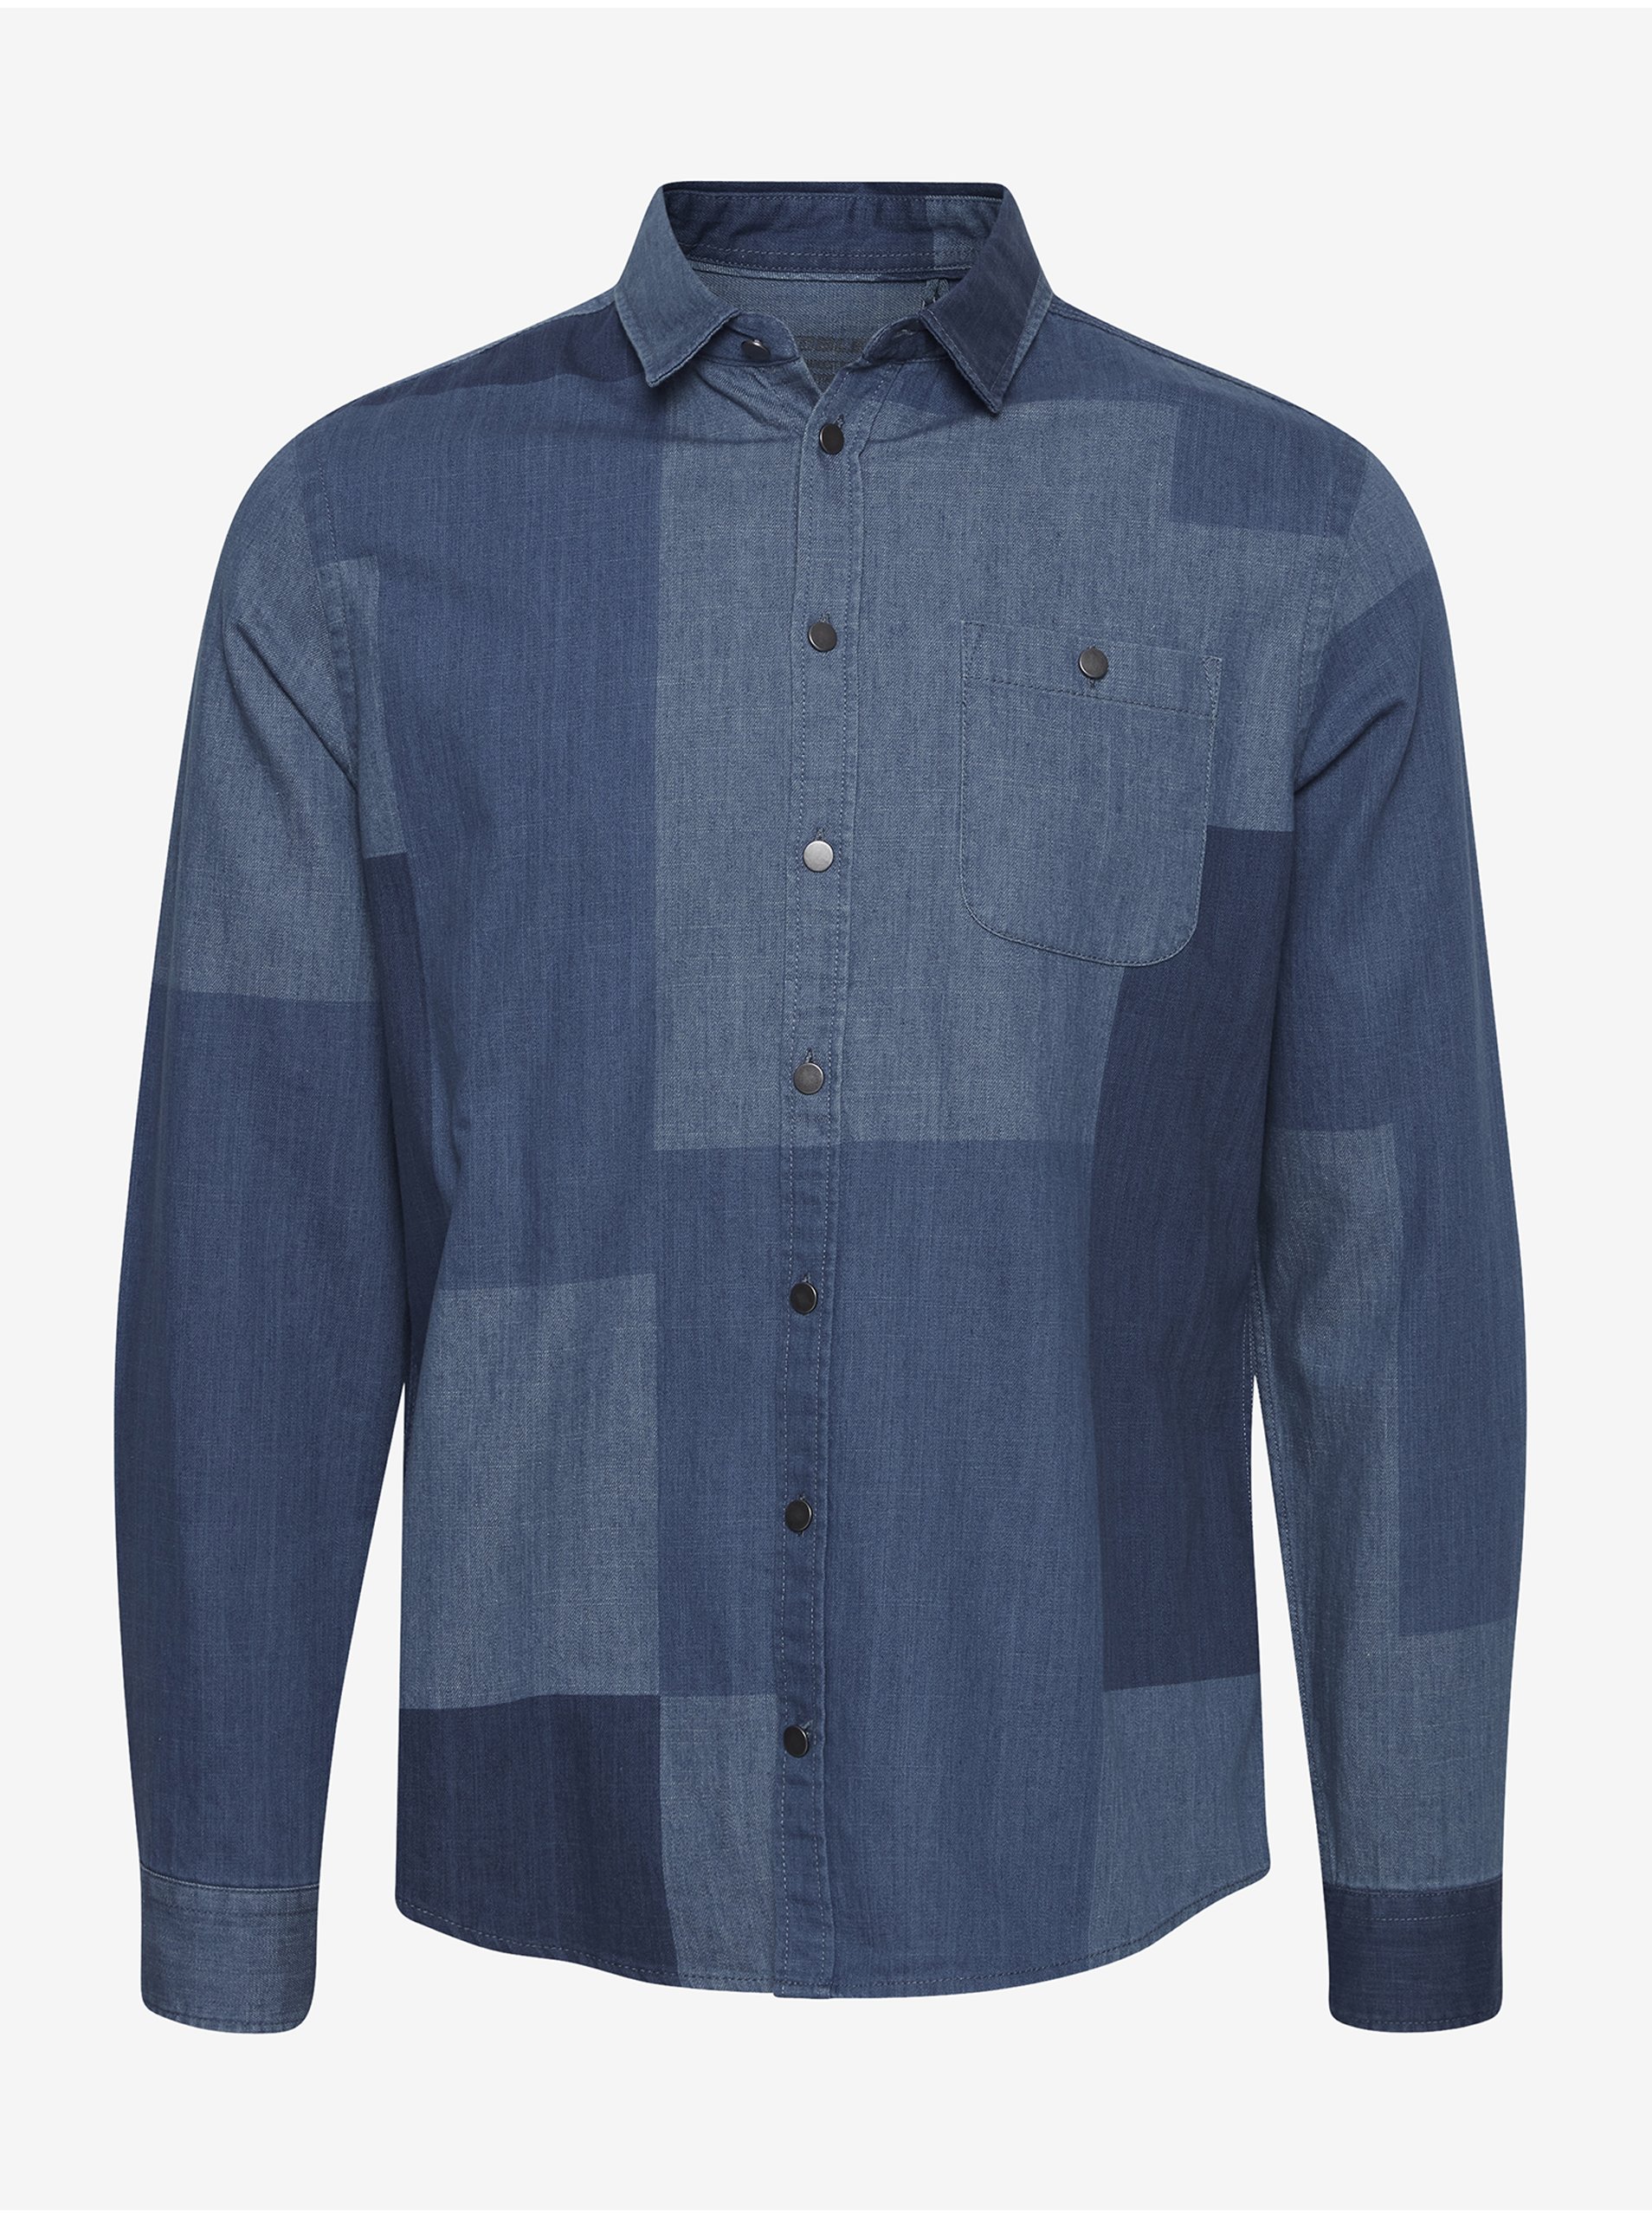 Lacno Modrá rifľová vzorovaná košeľa Blend Patchwork